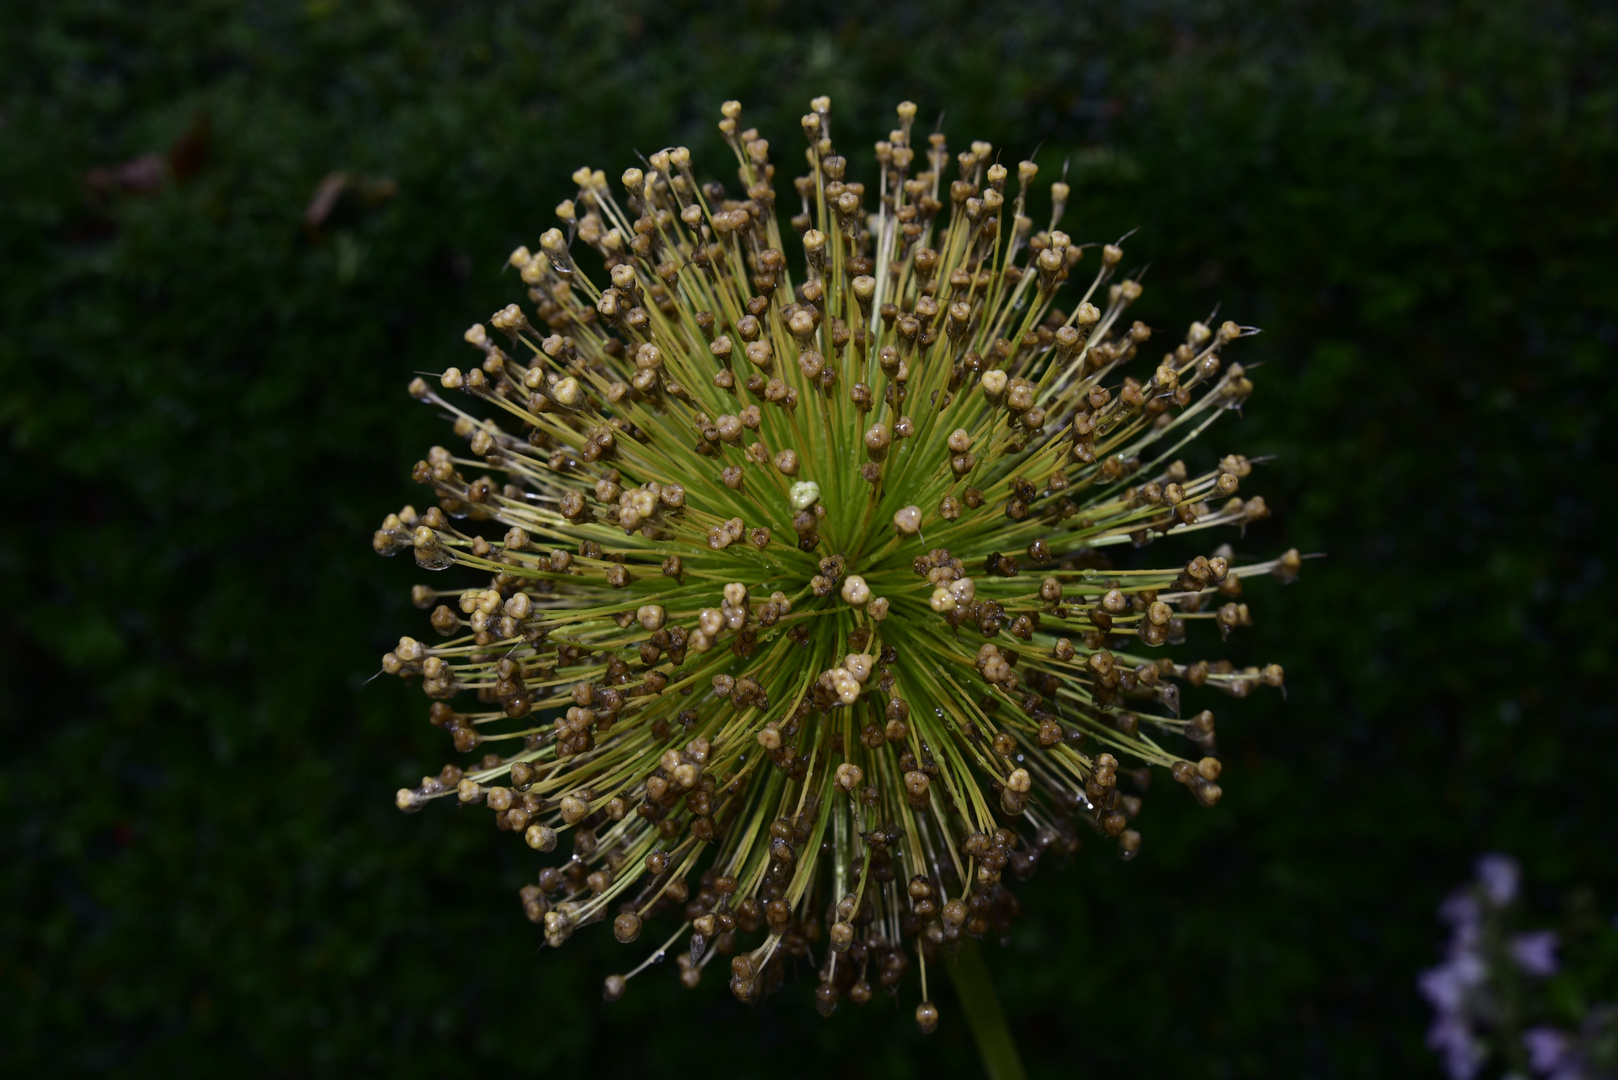 Allium - Kugellauch